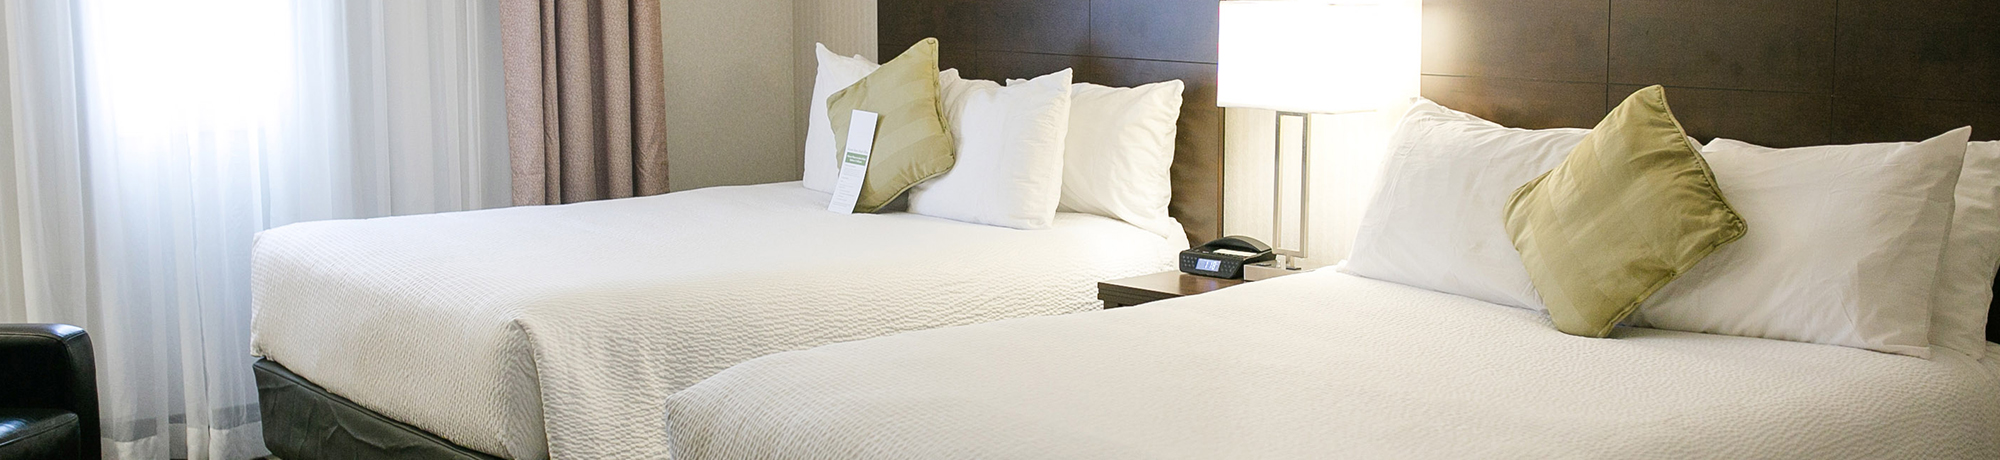 Winnipeg hotel guest room with double queen beds